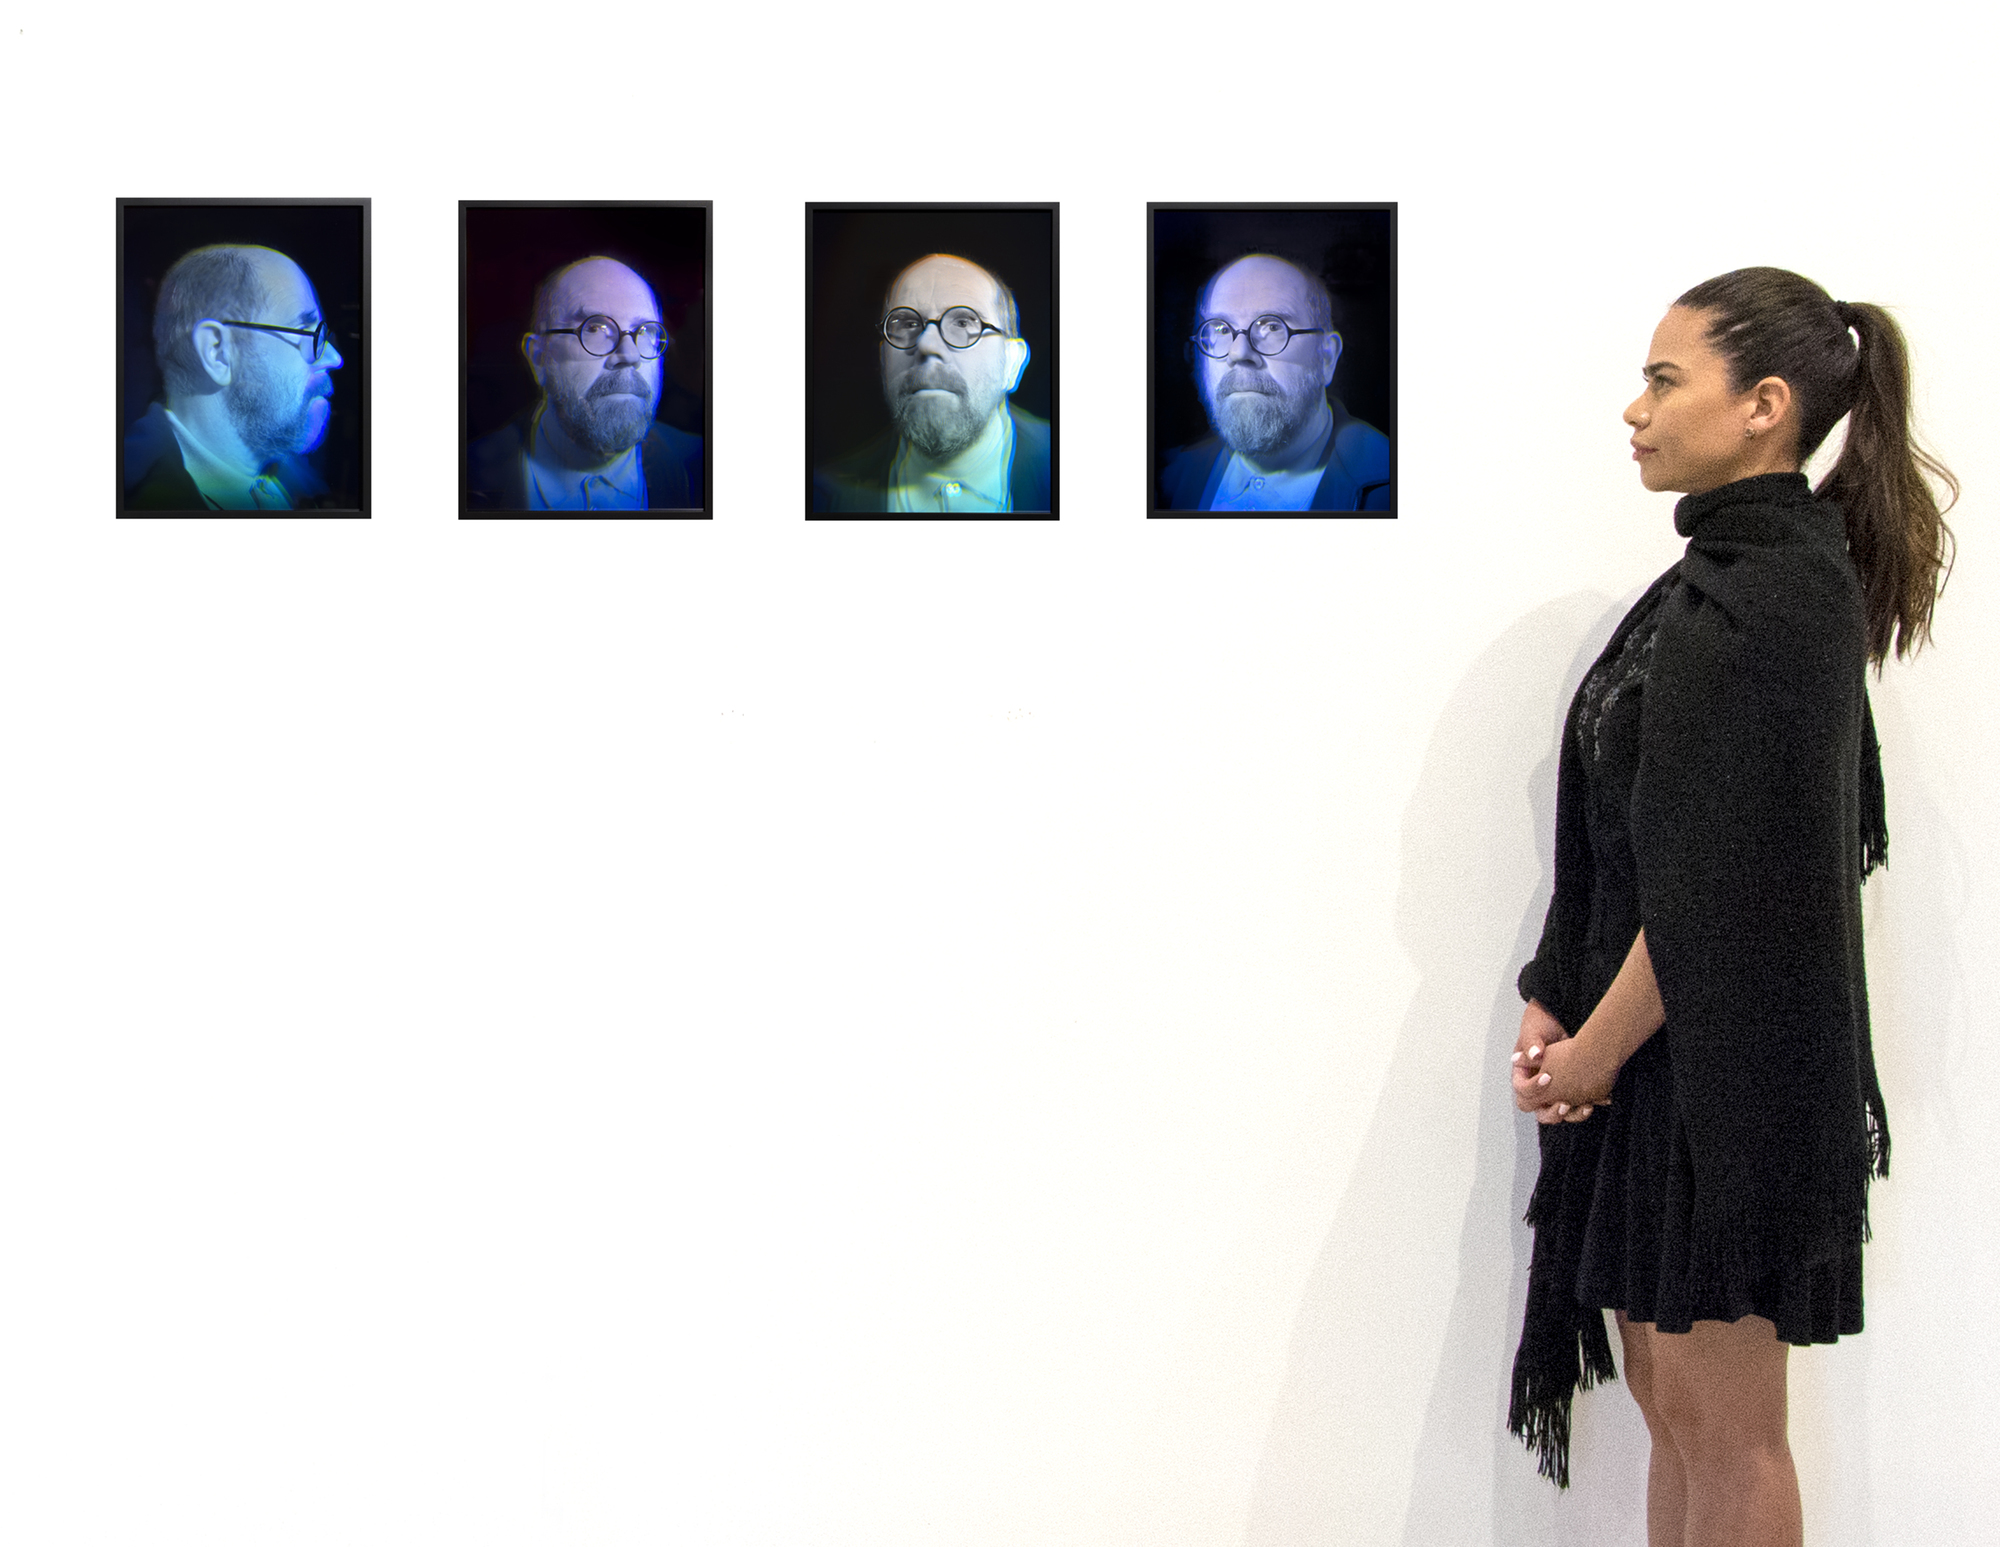 チャック・クローズの4つのガラス・ホログラムの組作品は、彼のセルフ・ポートレイトの永続的な探求と、革新的な芸術媒体への関心の魅力的な交差を表している。自画像はクローズの作品の礎であり、人間のアイデンティティの複雑さや芸術的創造のプロセスを深く掘り下げることを可能にしてきた。ホログラムは鑑賞者の位置によって変化し、クローズのピクセル化された作品と呼応しながらも、物理的な存在感を加え、ダイナミックな体験を生み出す。ホログラフィーは、伝統的な肖像画と現代技術の進歩を巧みに組み合わせ、視覚表現の境界線に絶えず挑戦し、再定義することで、自身の芸術言語を進化させるという作家のコミットメントを示している。